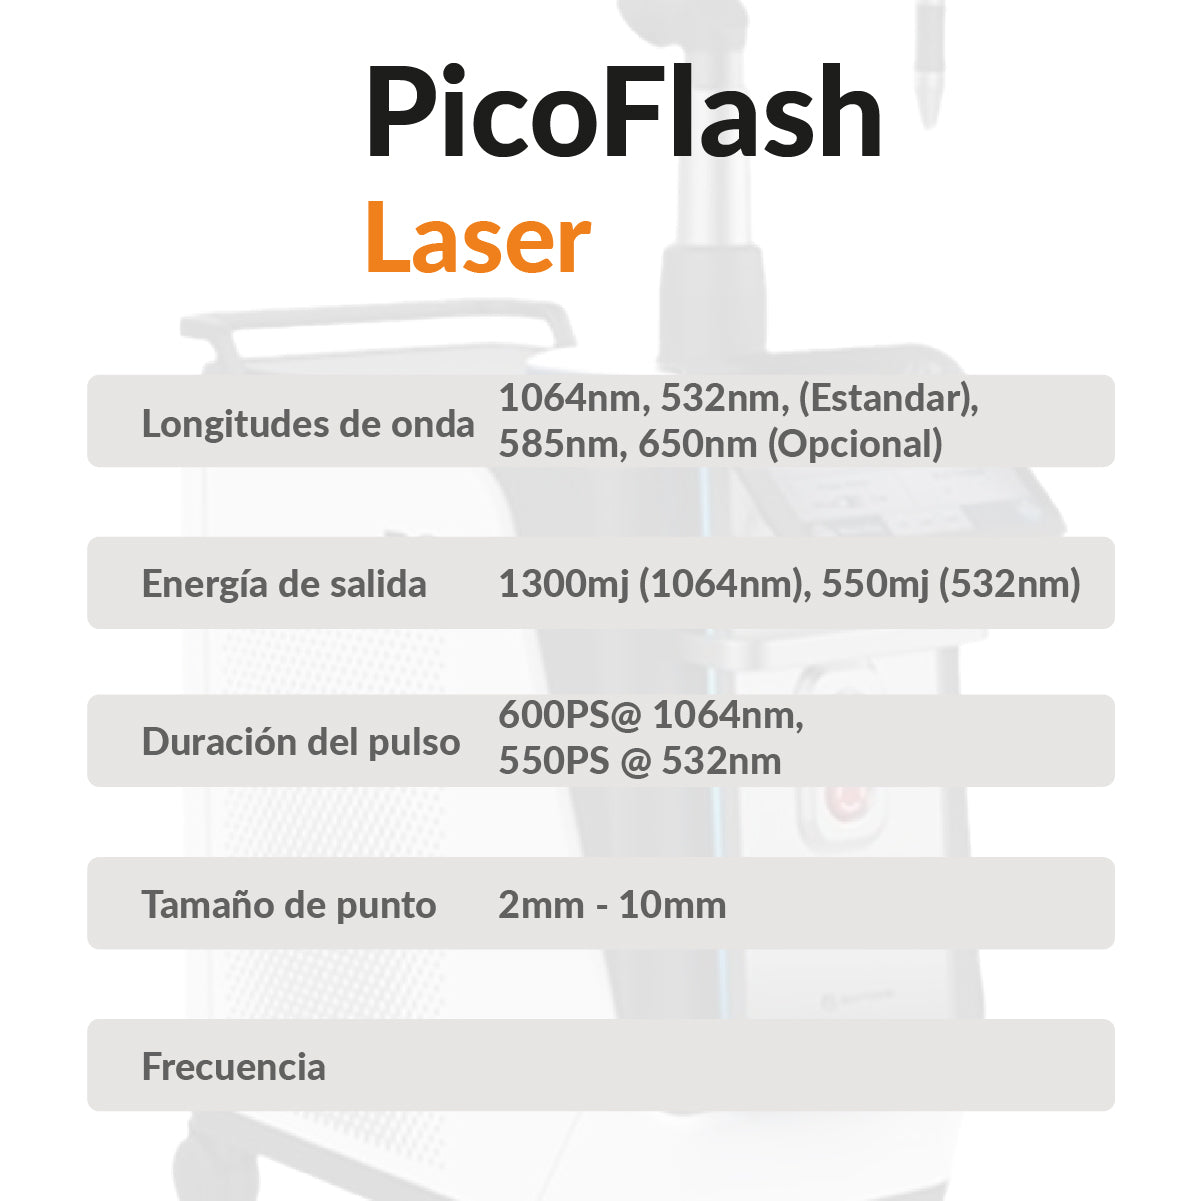 PicoFlash Laser